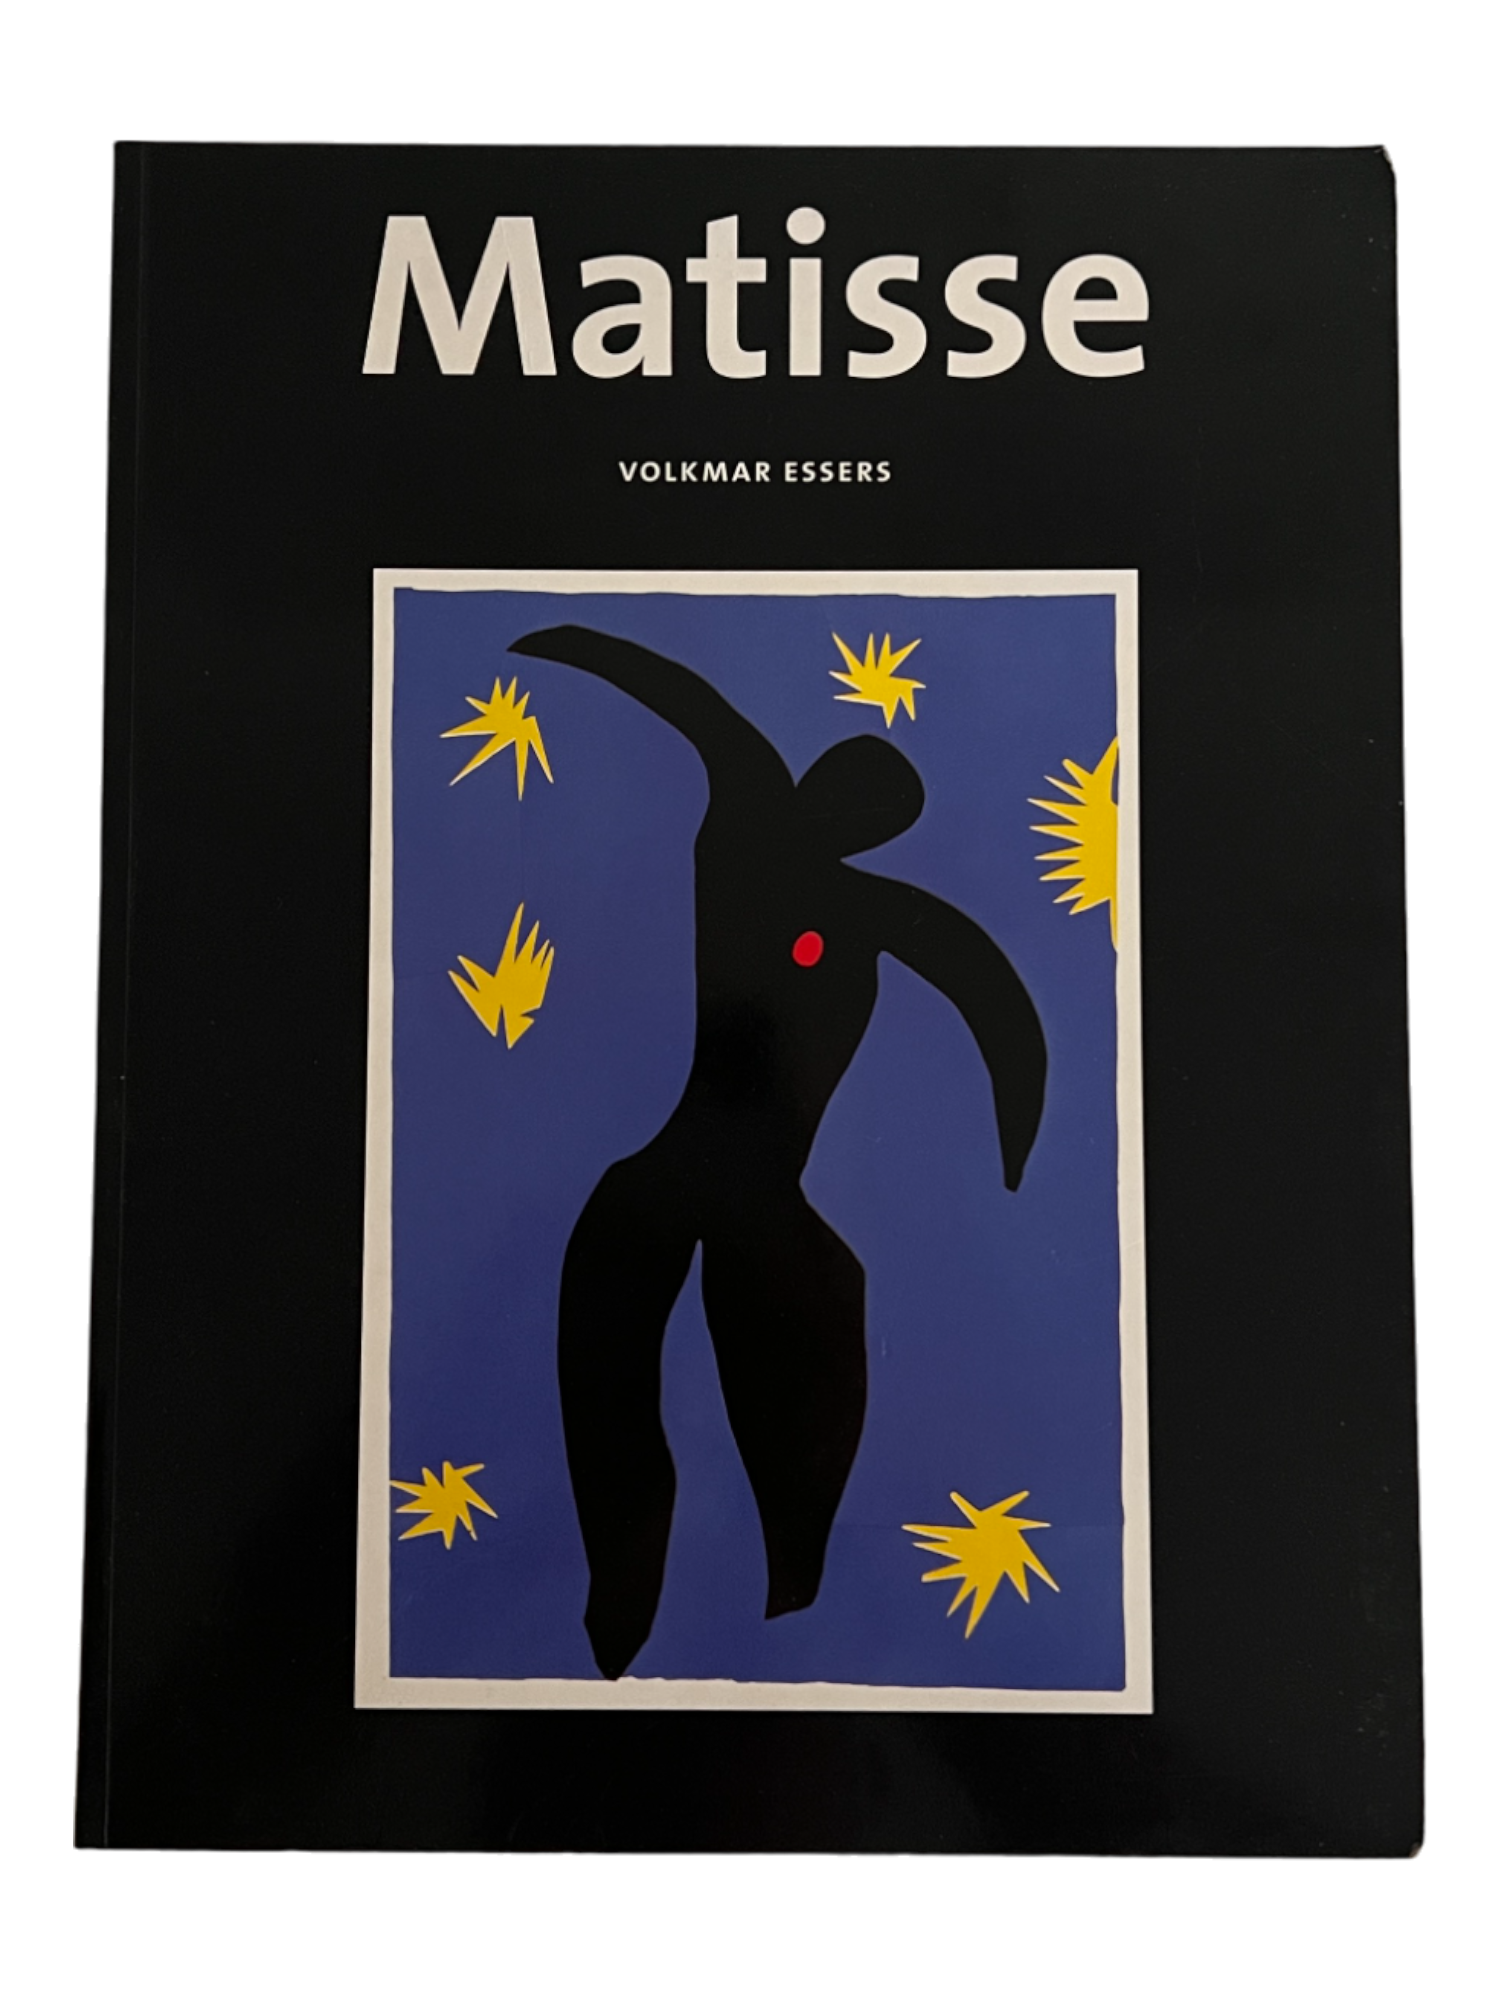 Matisse, 1997